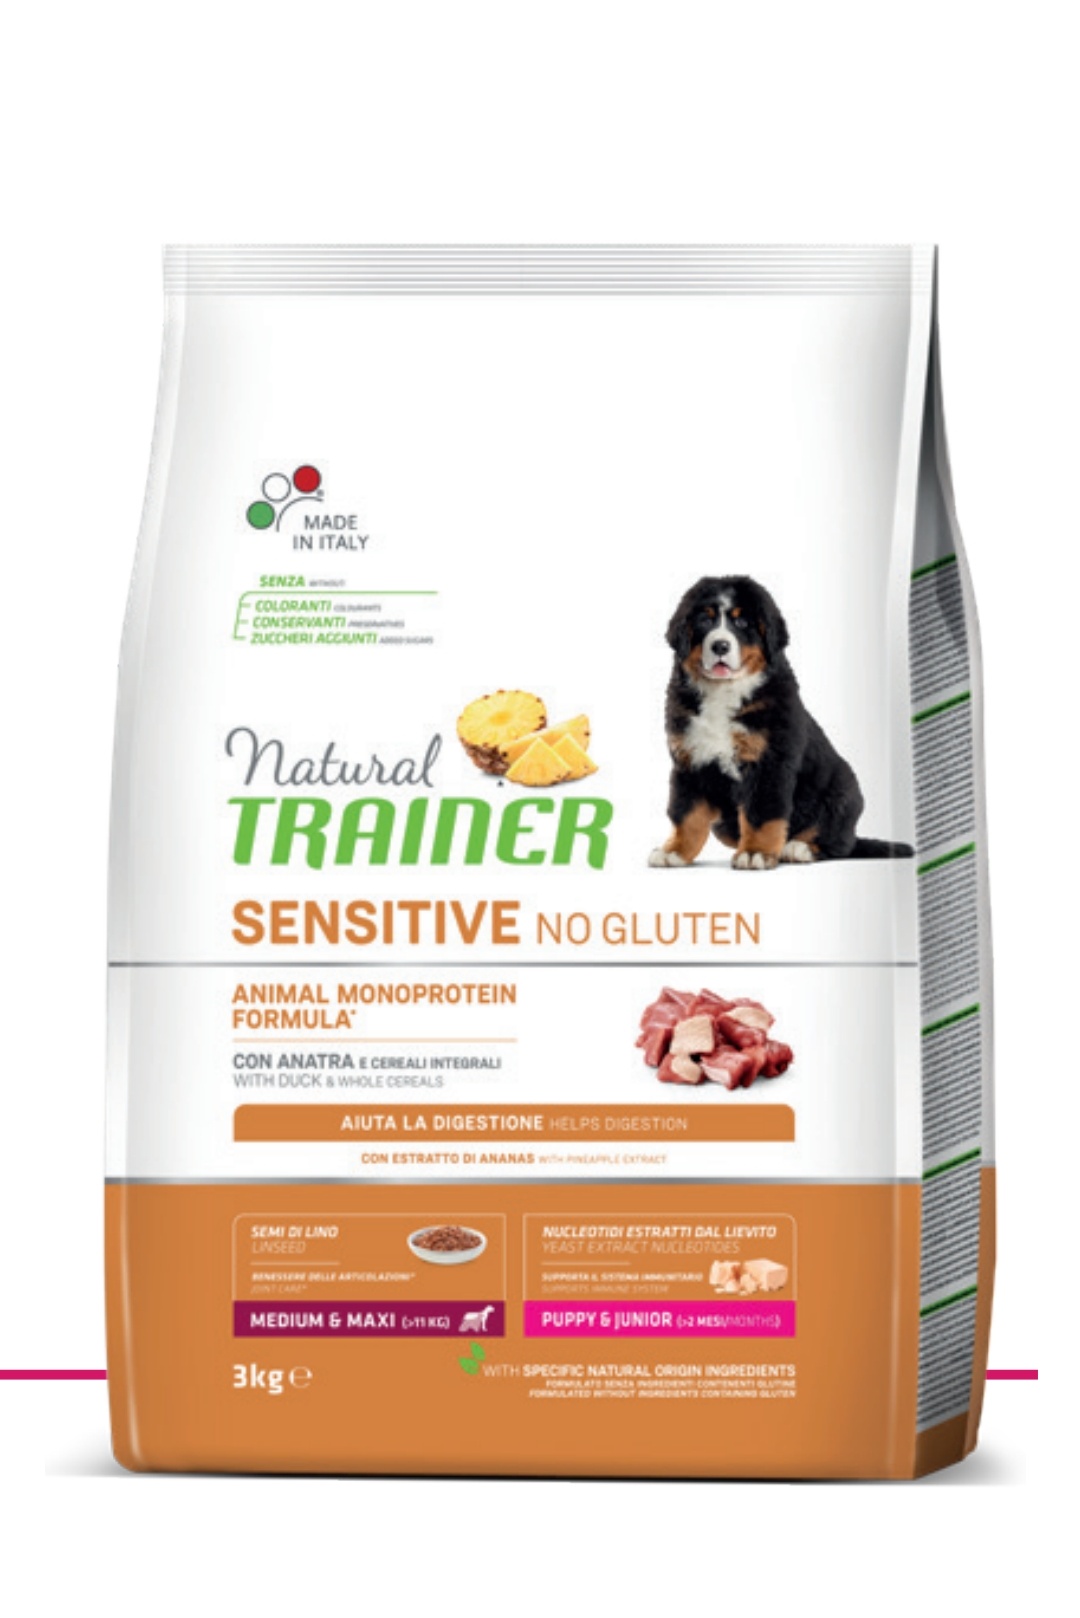 Trainer Sensitive No Gluten Puppy & Junior (>2 mesi) con Anatra e Cereali Integrali 3kg